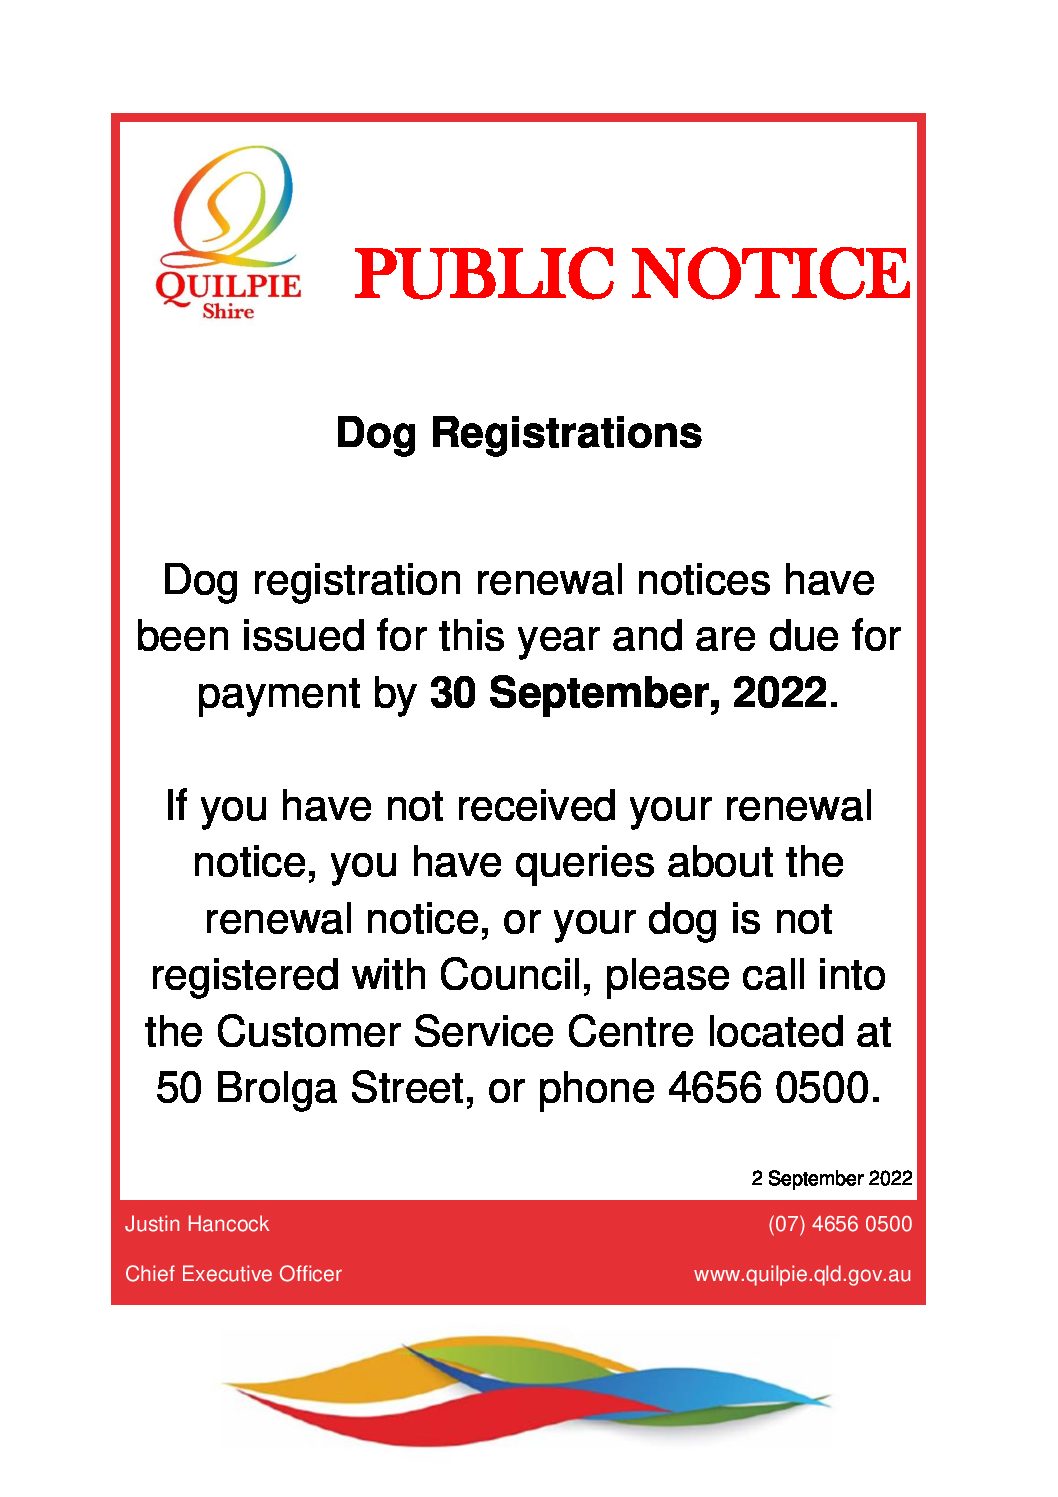 Dog Registrations Due 30 September 2022